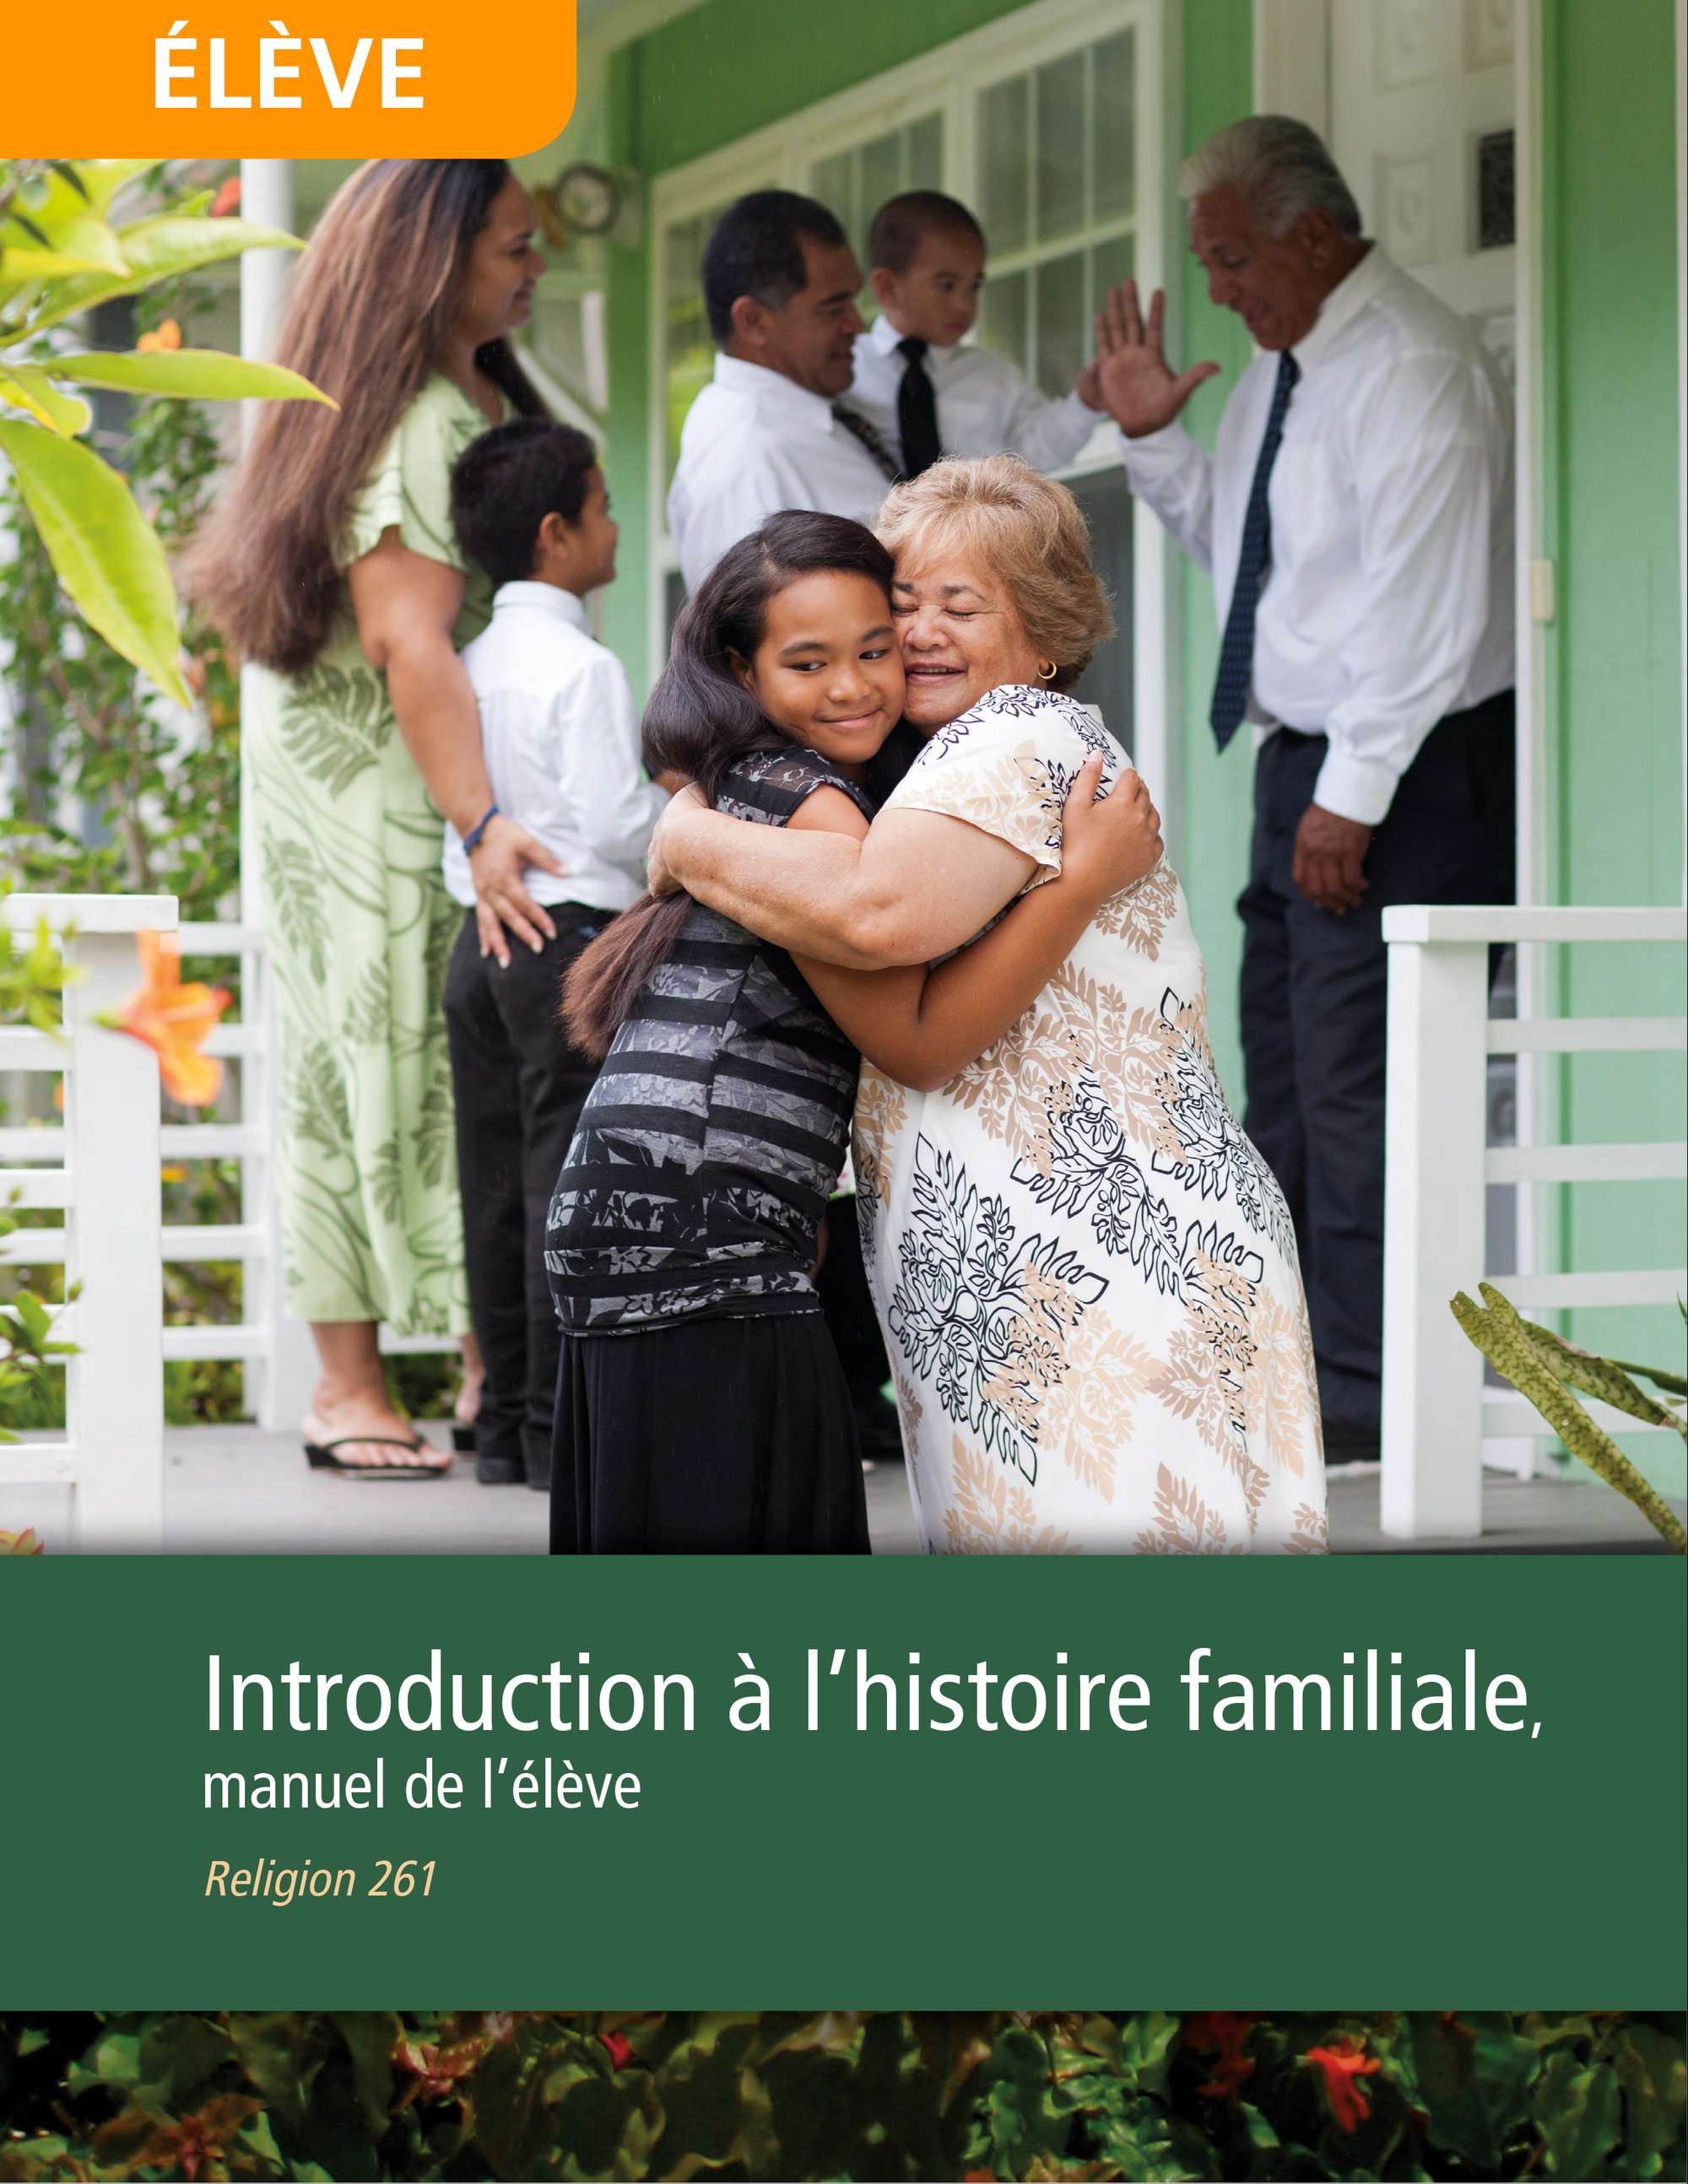 Introduction à l’œuvre de l’histoire familiale, manuel de l’étudiant (Religion 261)